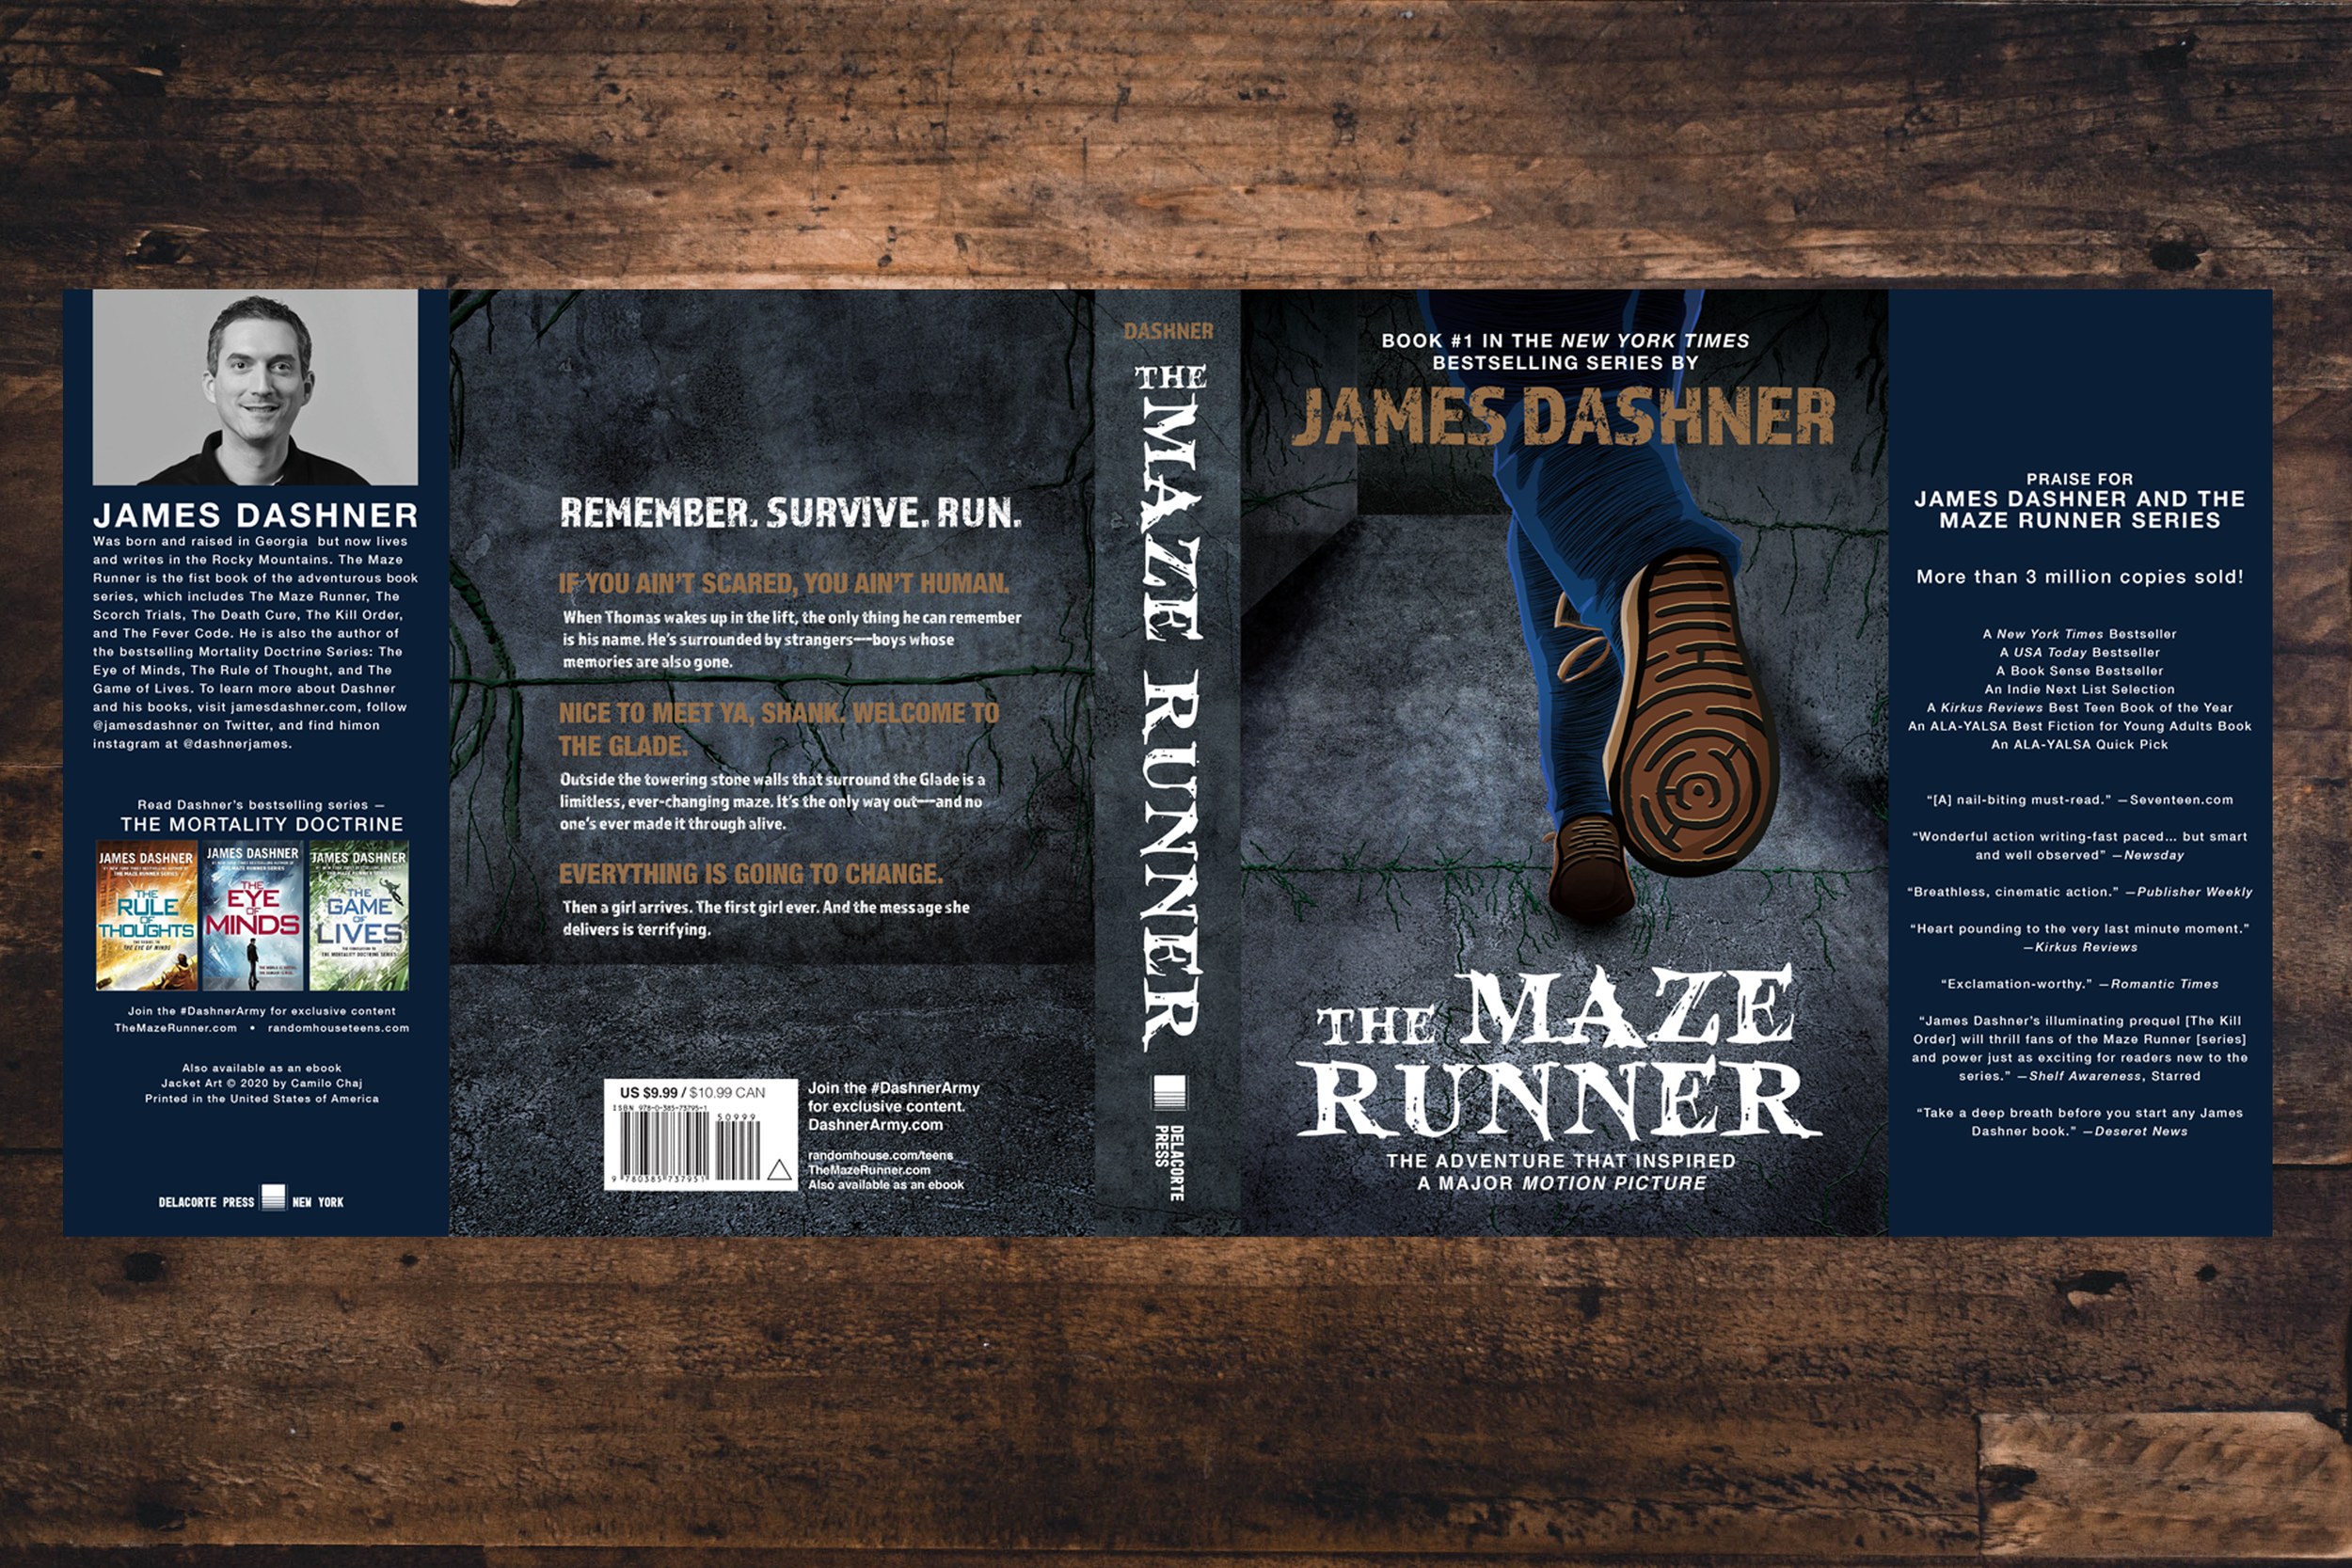  The Maze Runner (The Maze Runner, Book 1) eBook